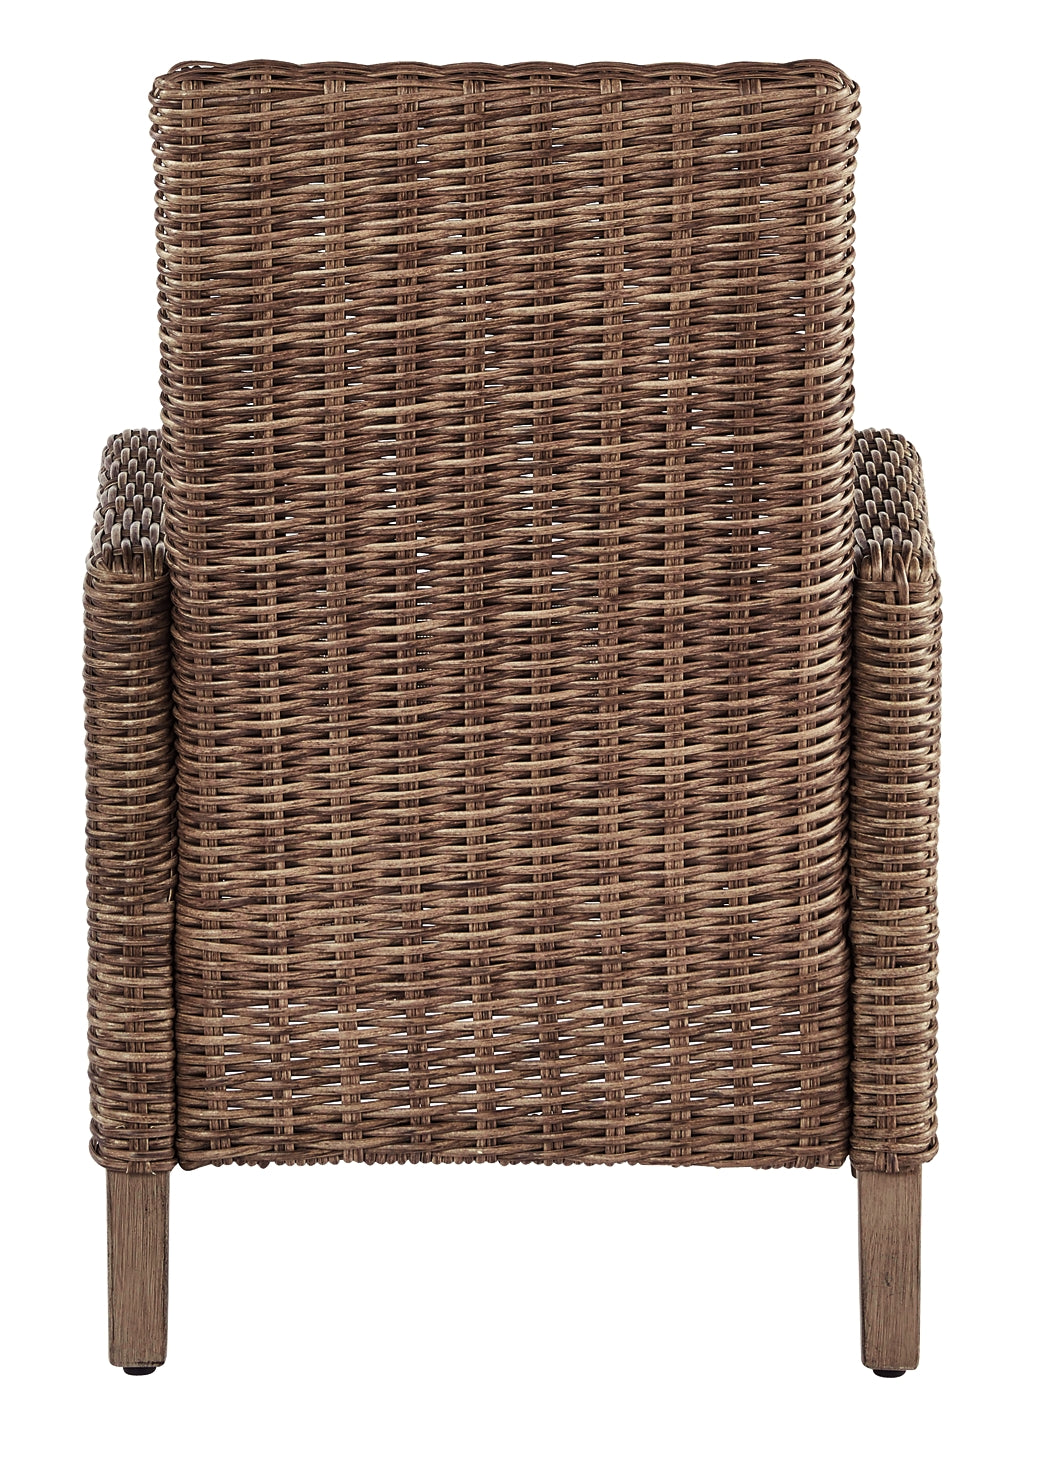 Beachcroft Arm Chair With Cushion (2/CN)